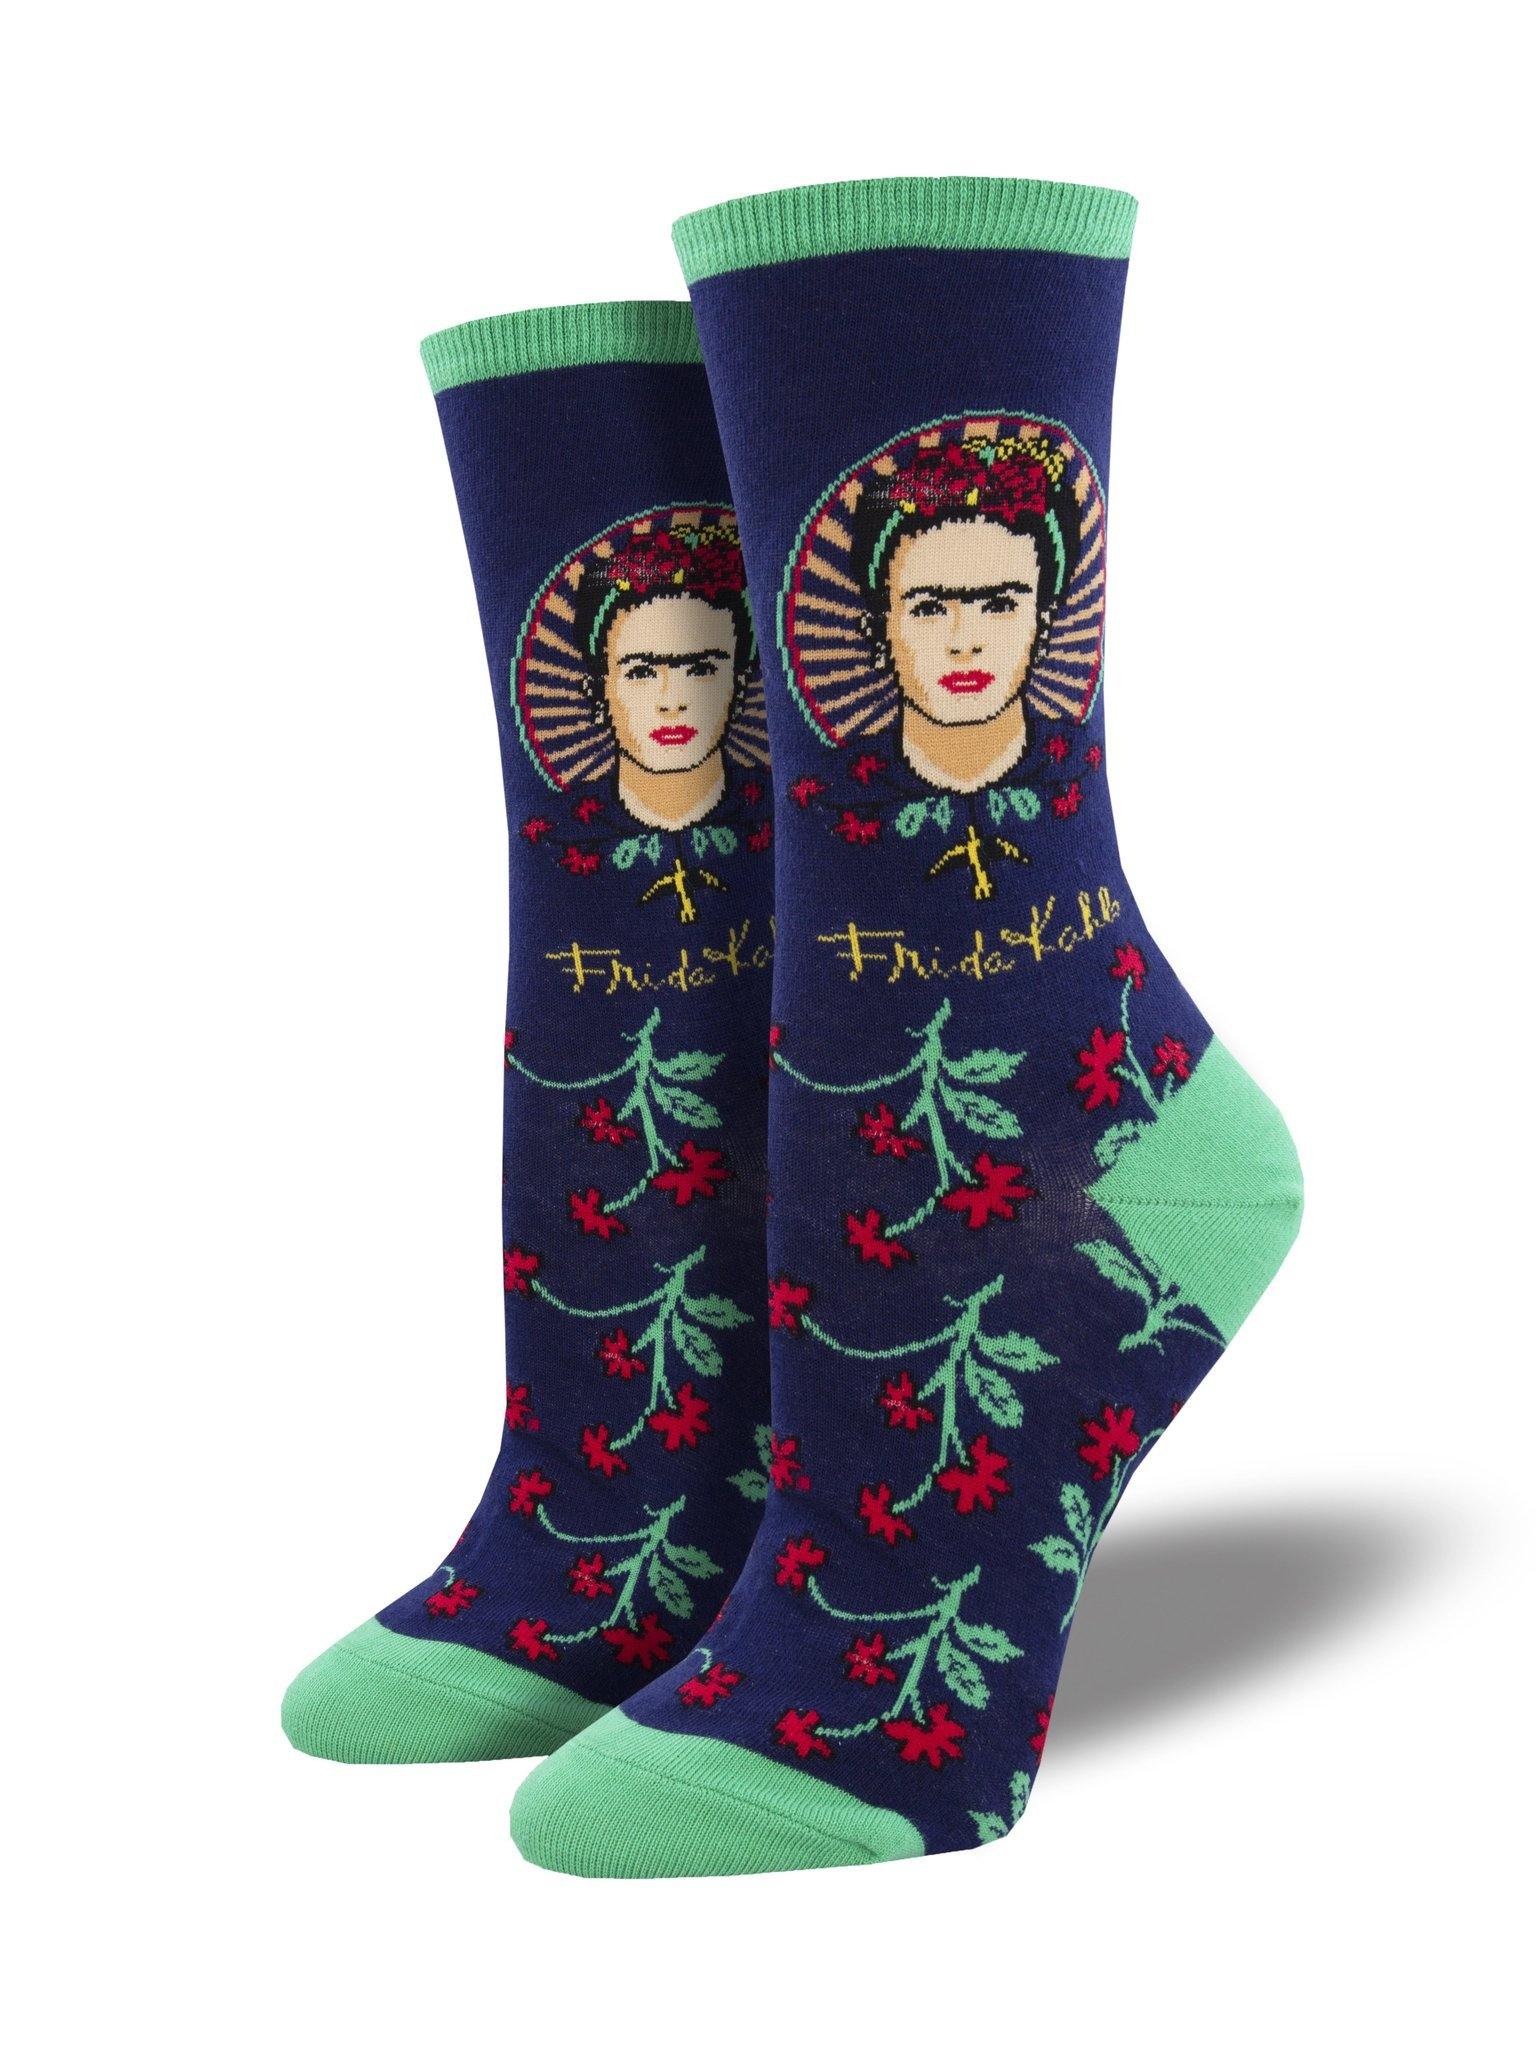 Frida Kahlo "Frida Flower" Socks - Revival Phl